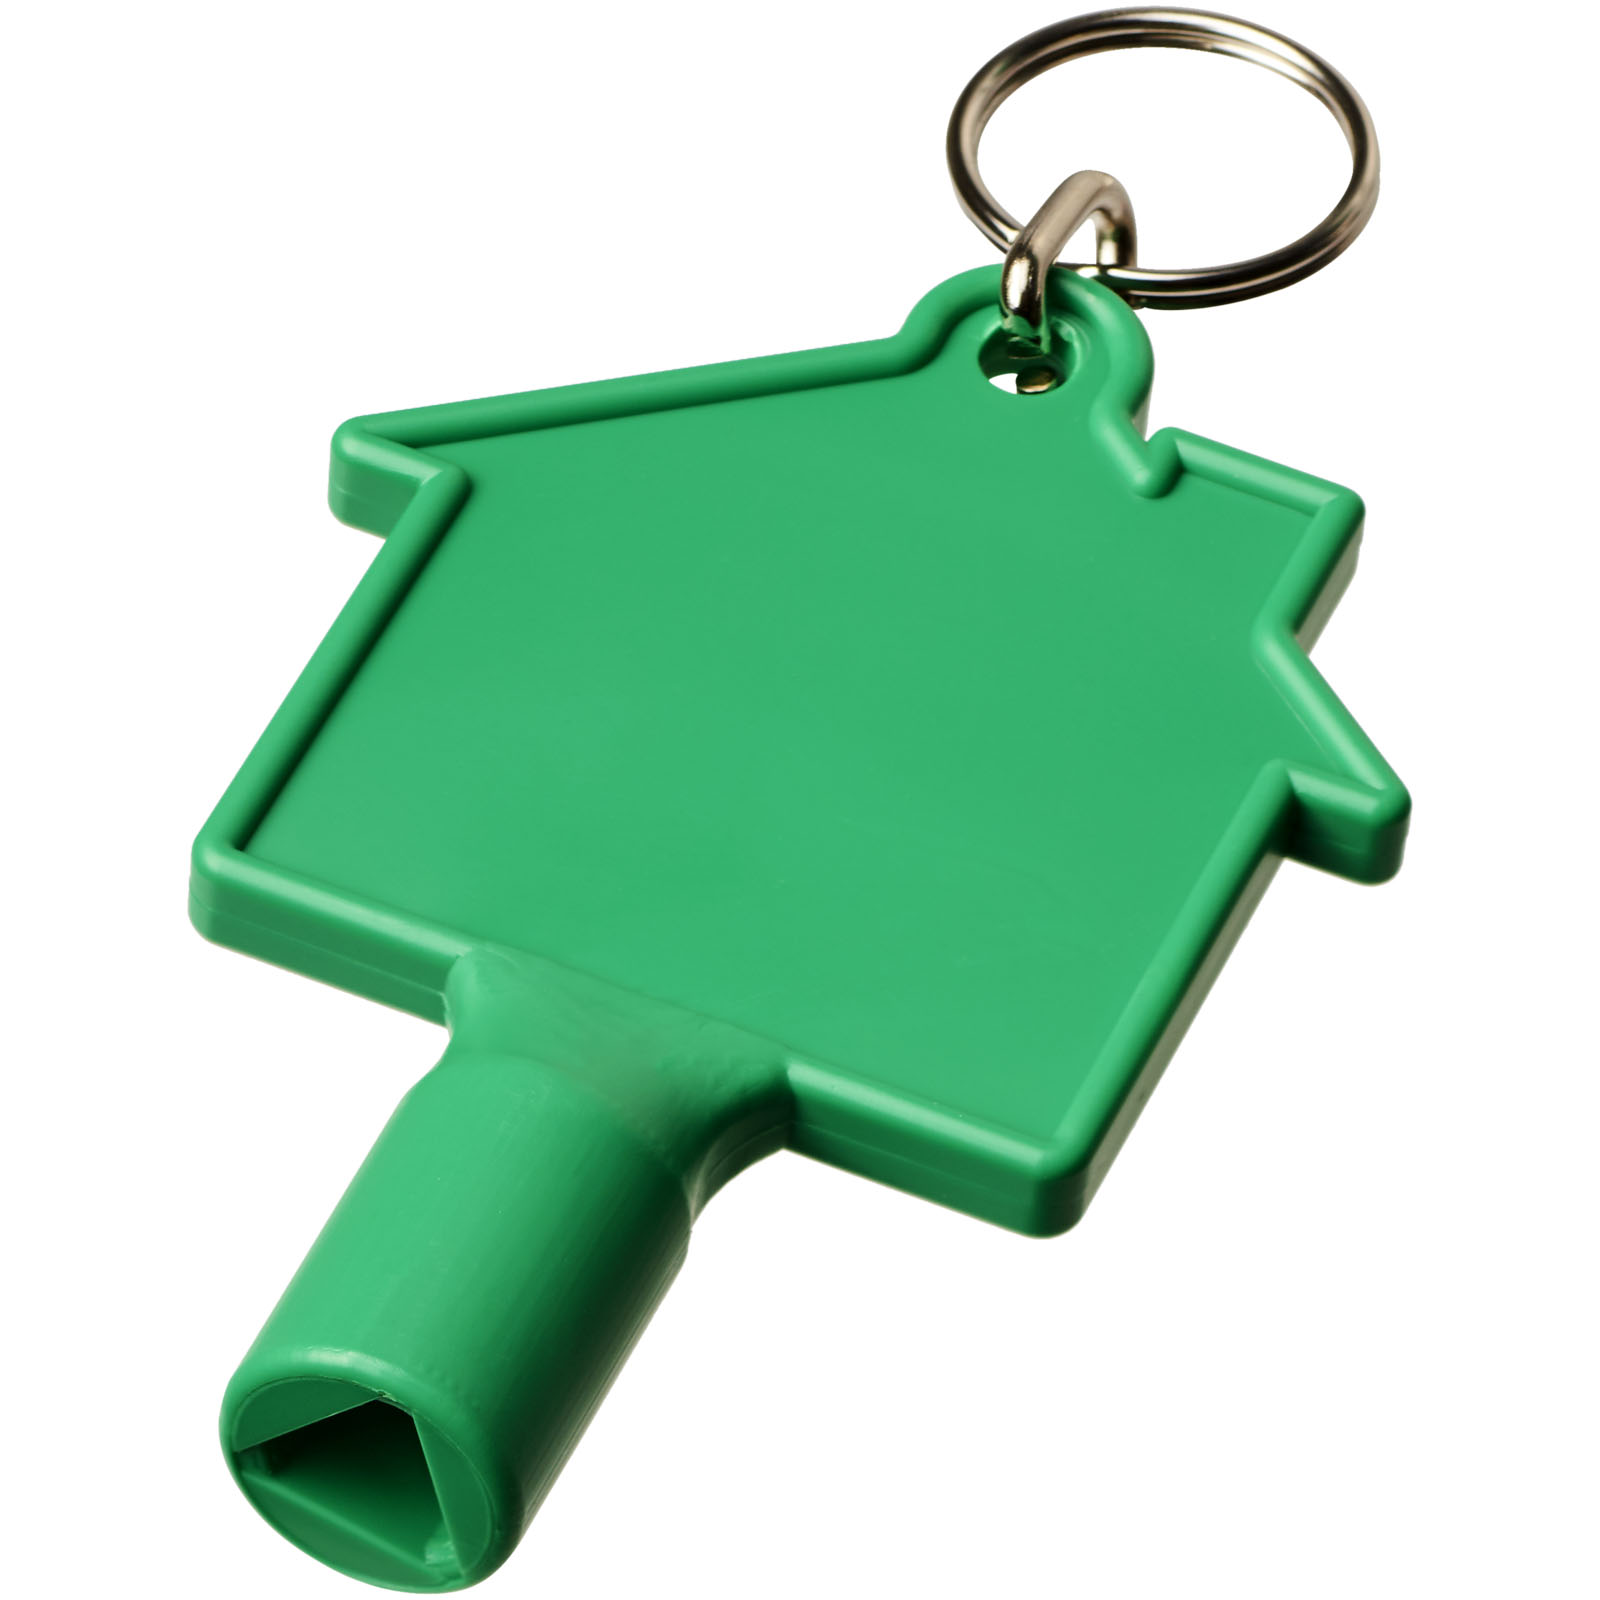 Advertising Keychains & Keyrings - Maximilian house-shaped utility key with keychain - 0